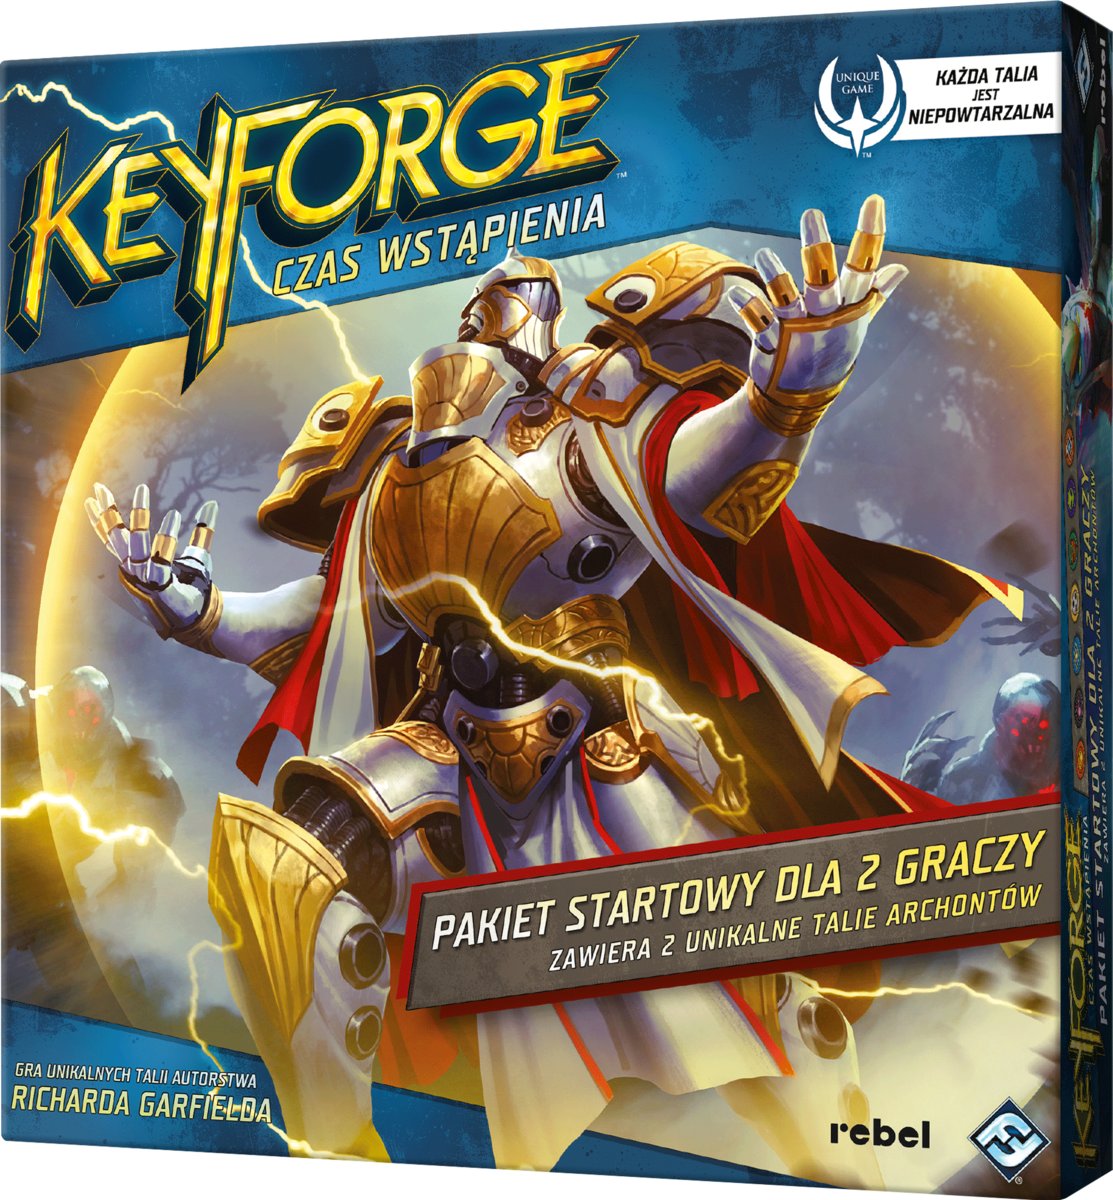 KeyForge: Czas Wstąpienia - Pakiet startowy, gra strategiczna, Rebel